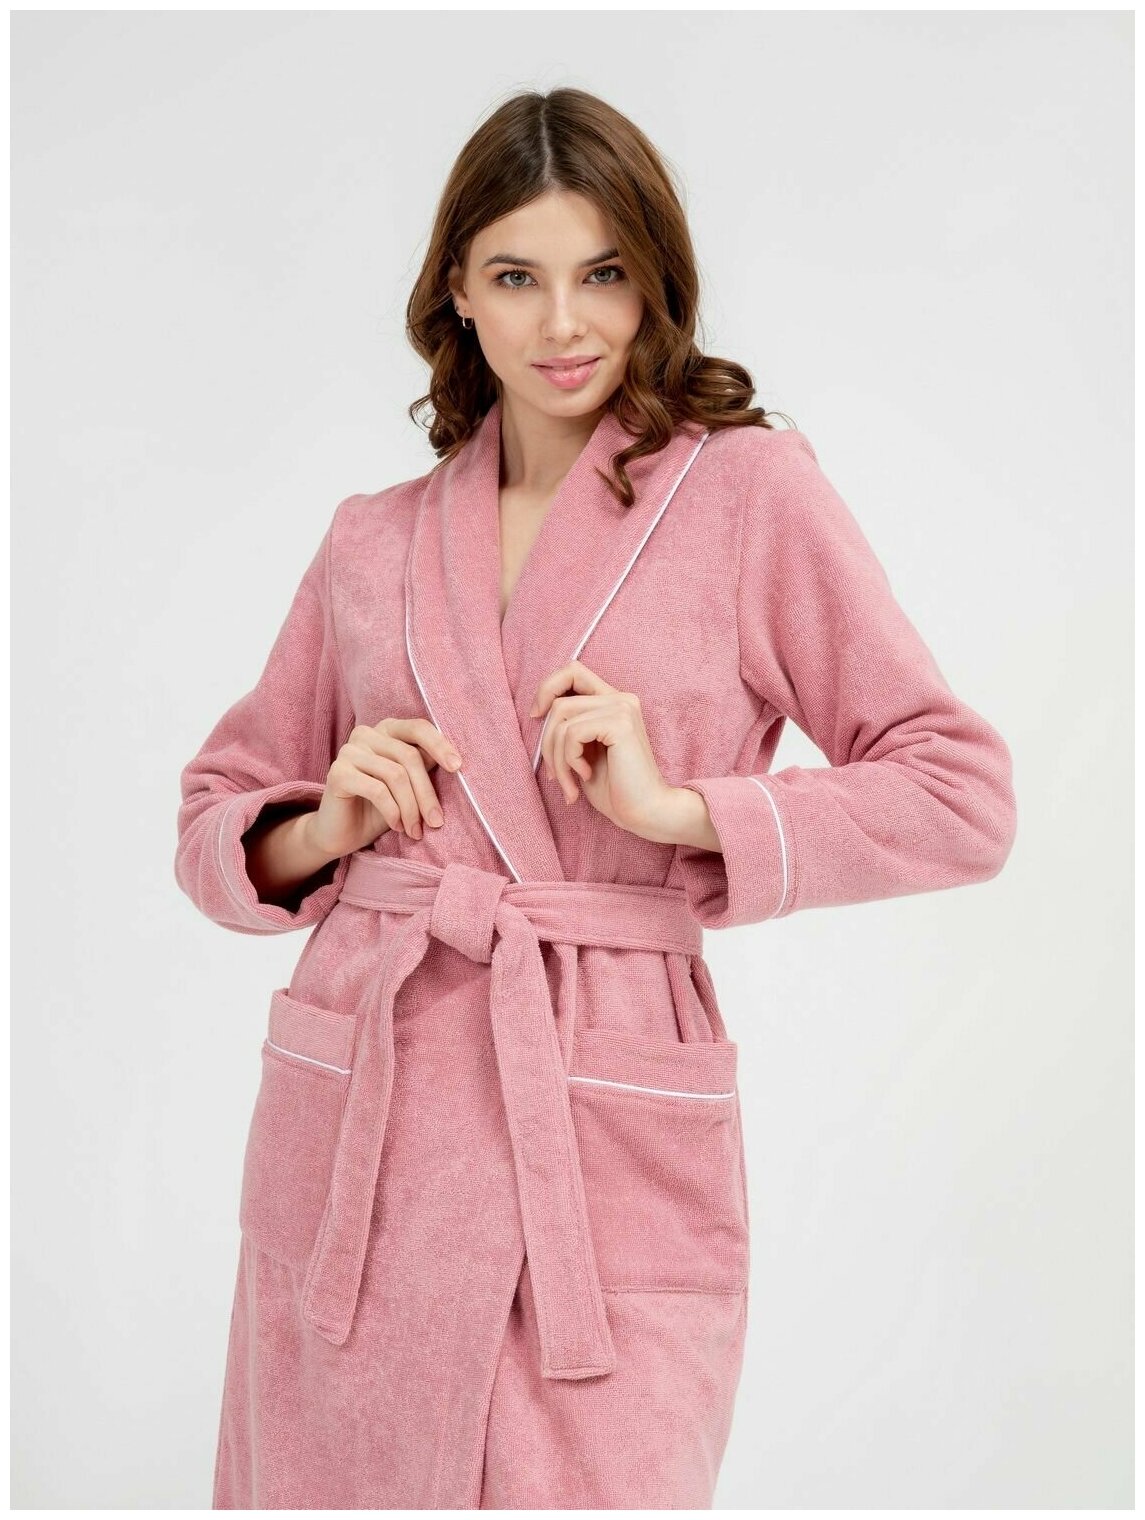 Женский махровый халат с кантом Росхалат, пудрово-розовый. Размер 46-48 - фотография № 11